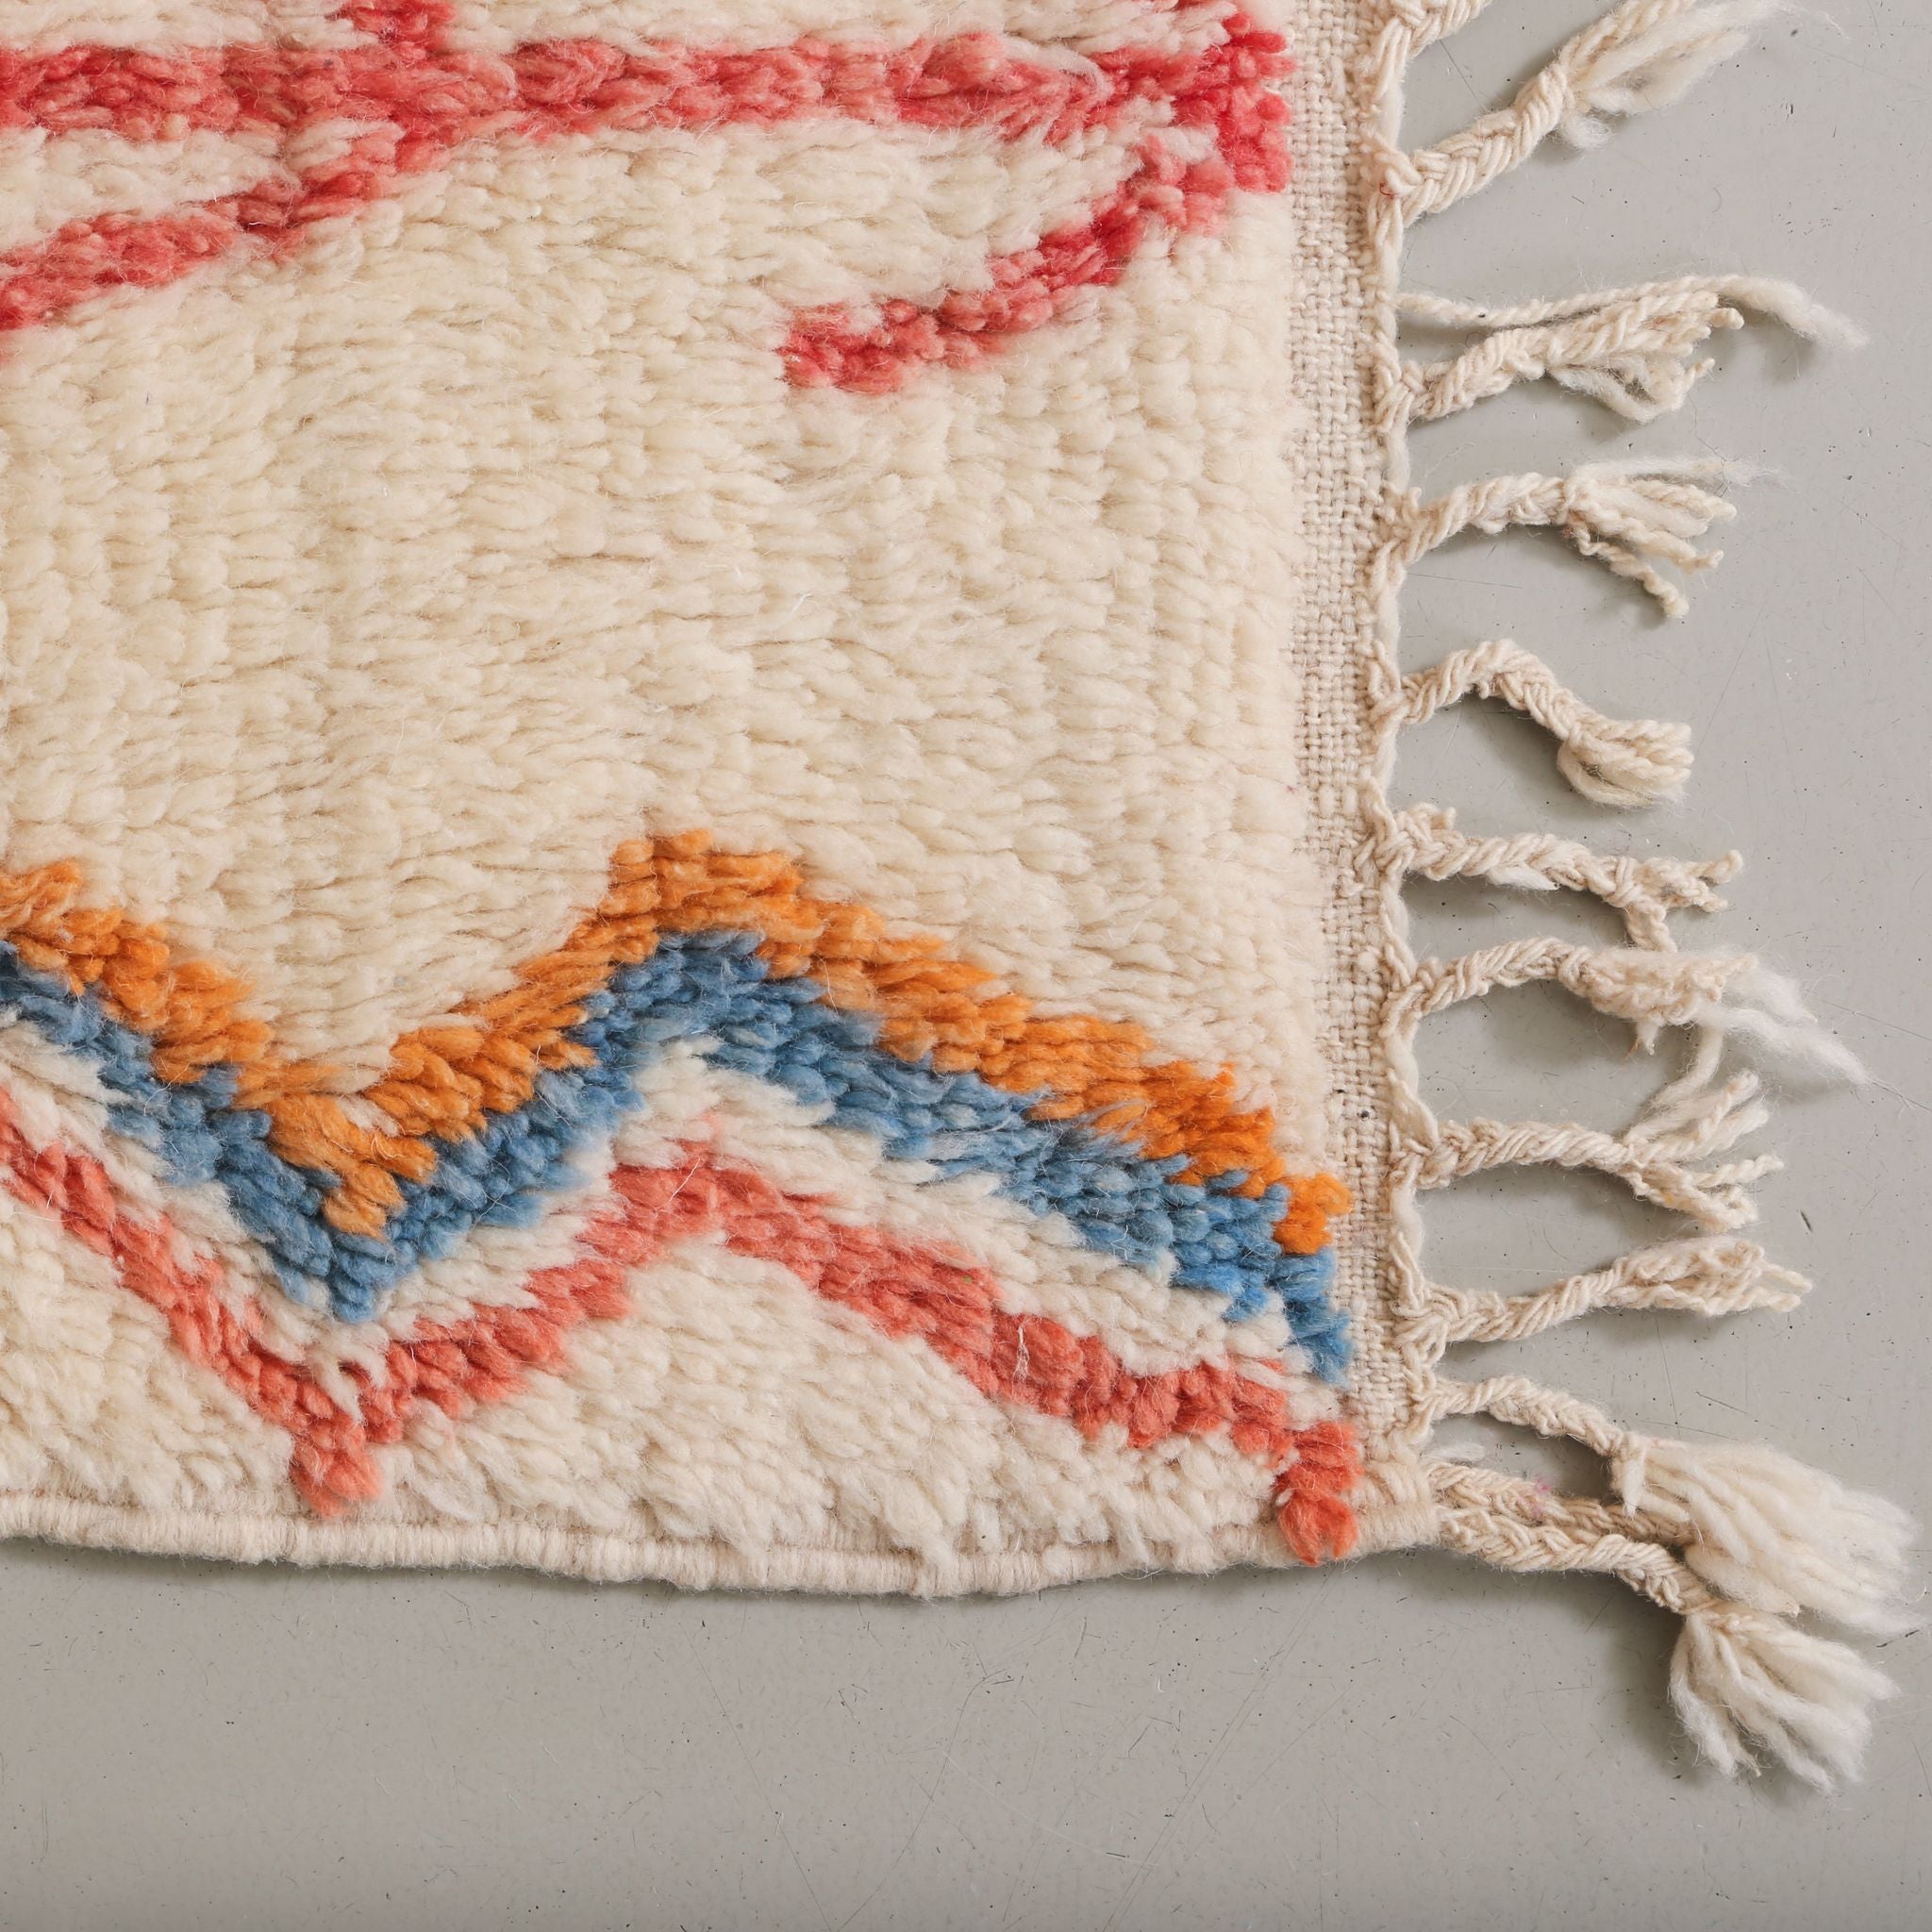 dettaglio dell'angolo del tappeto per osservare la precisione dei nodi di lana